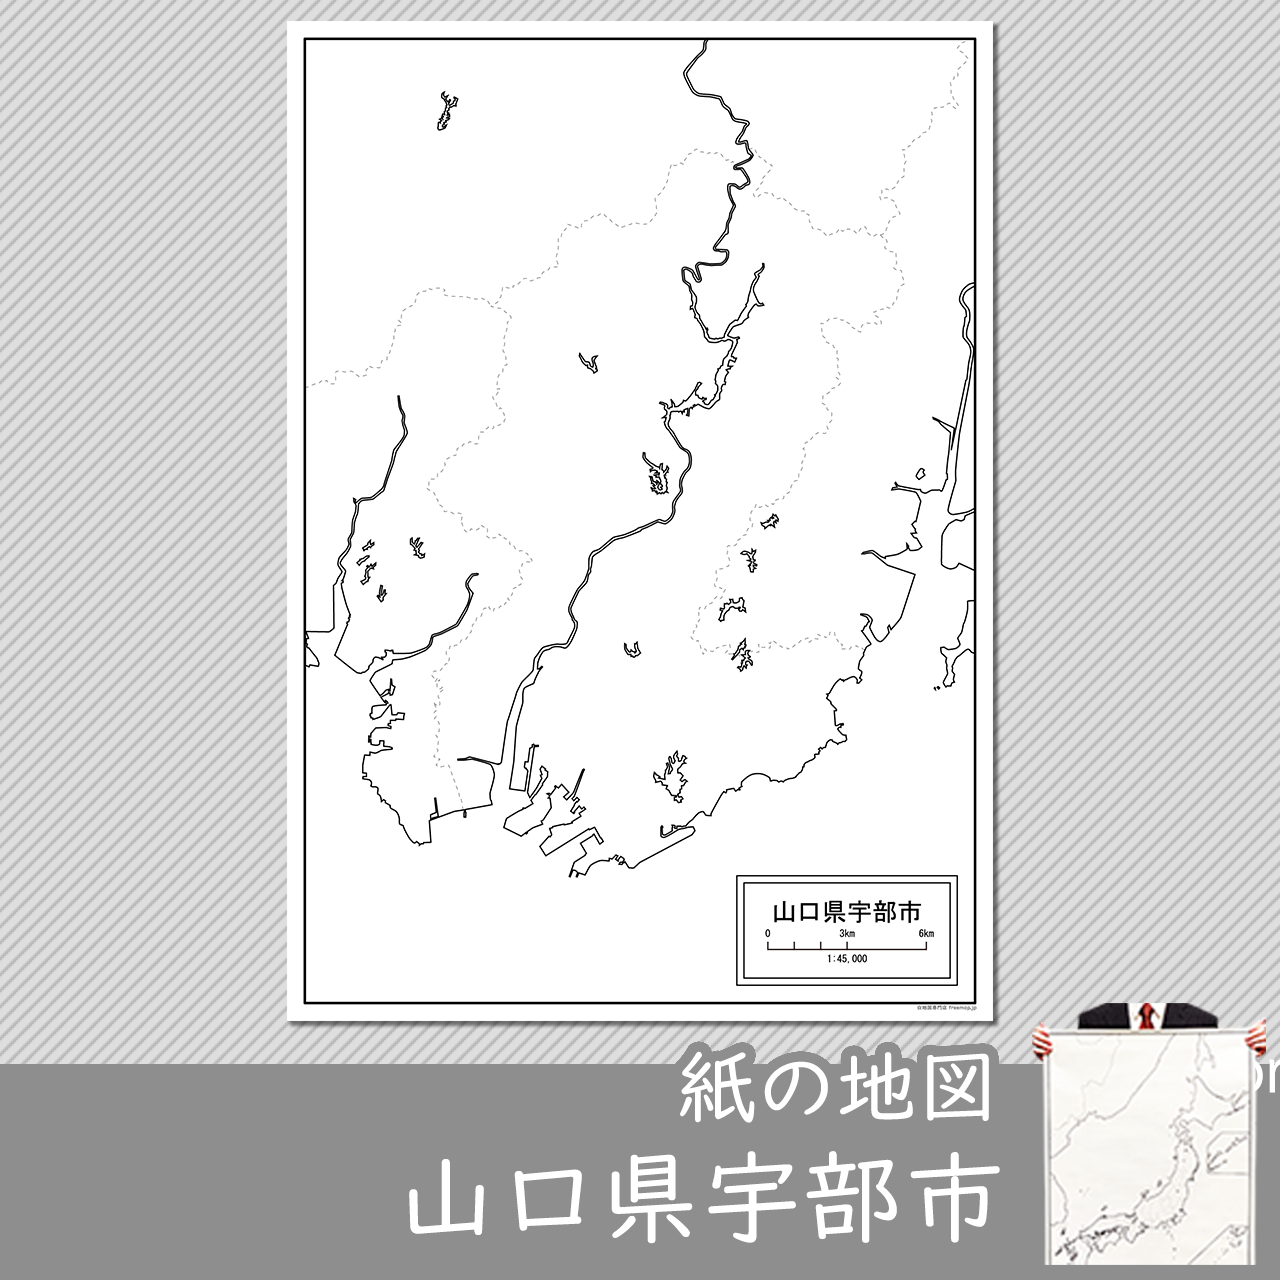 宇部市の紙の白地図のサムネイル